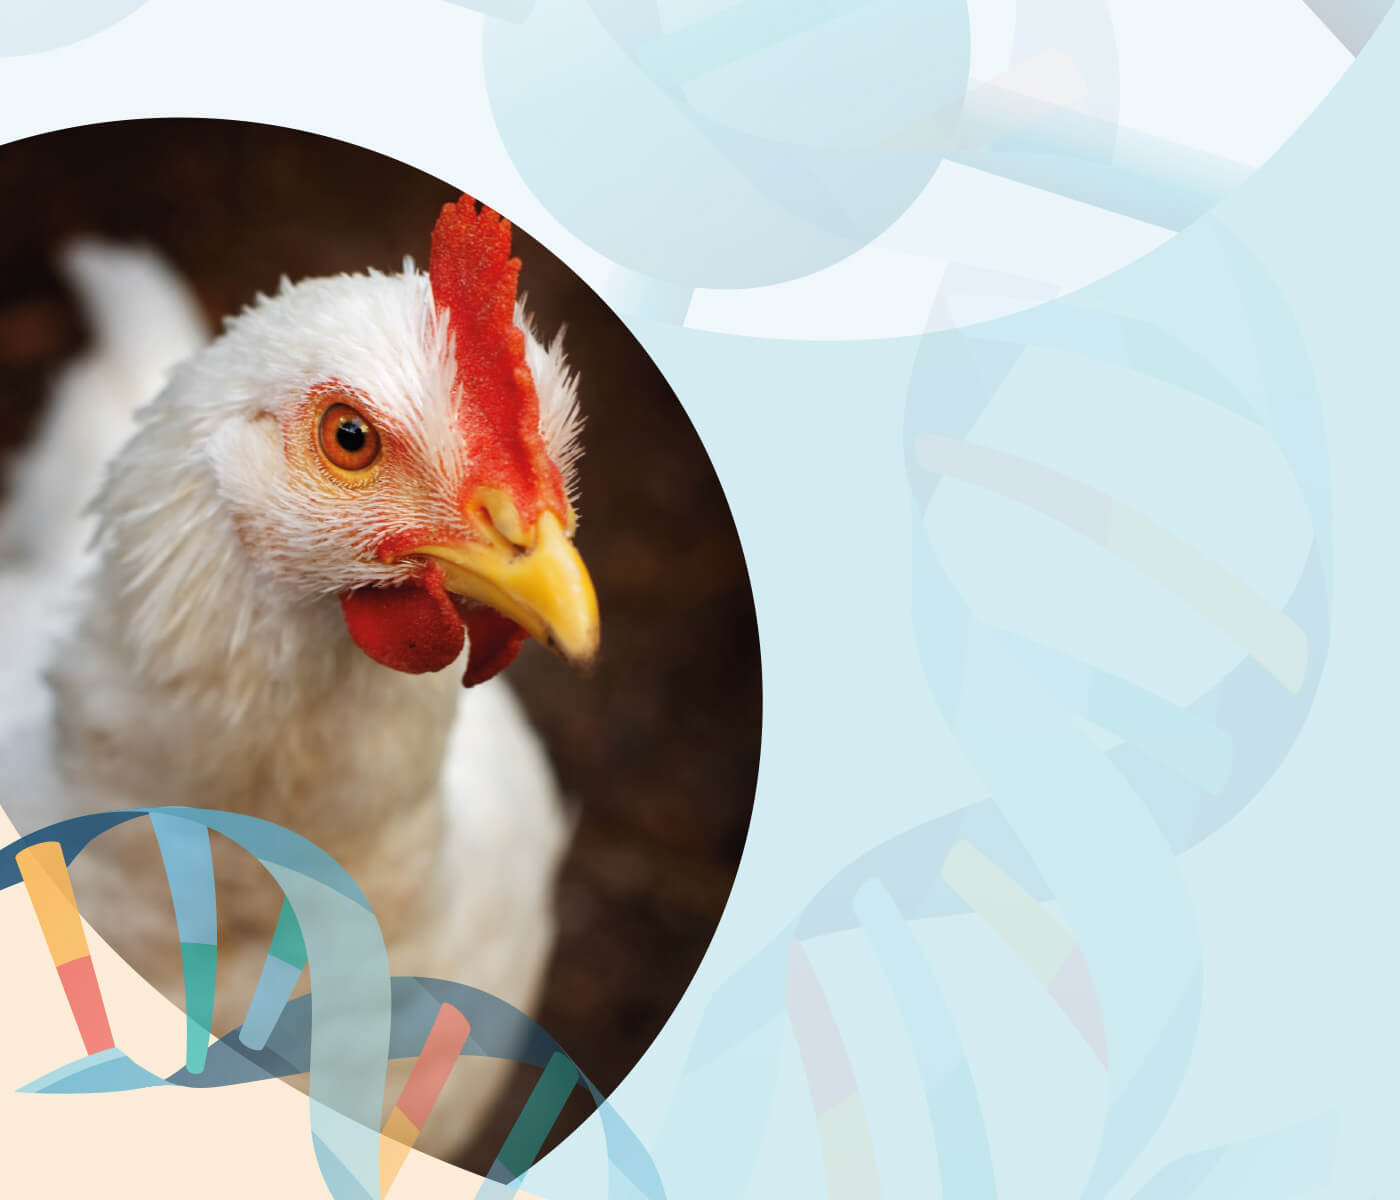 Metionina na dieta de aves e seu papel na prevenção antioxidante do organismo – Parte II